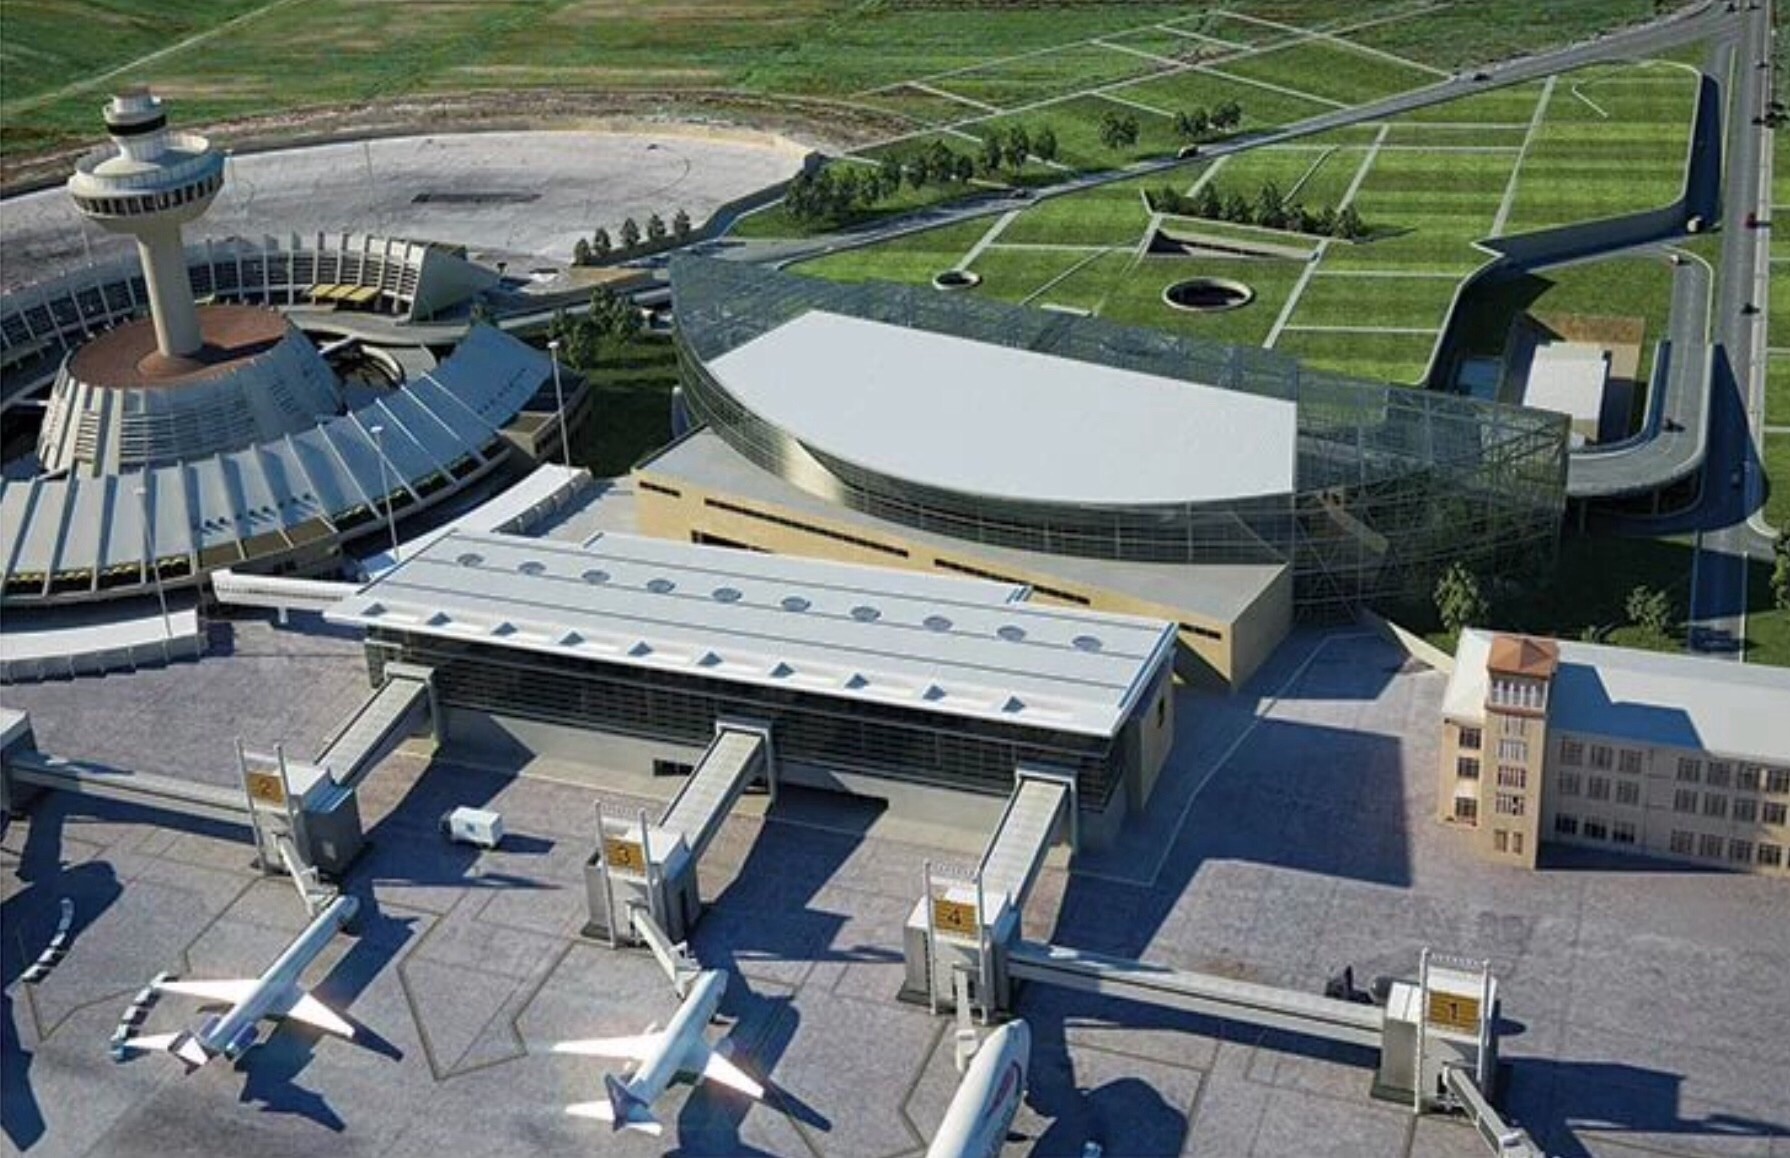 Пересадка в ереване. Международный аэропорт Ереван Звартноц, Армения. Терминал аэропорт Звартноц. Аэропорт Звартноц новый. Аэропорт Ереван новый.